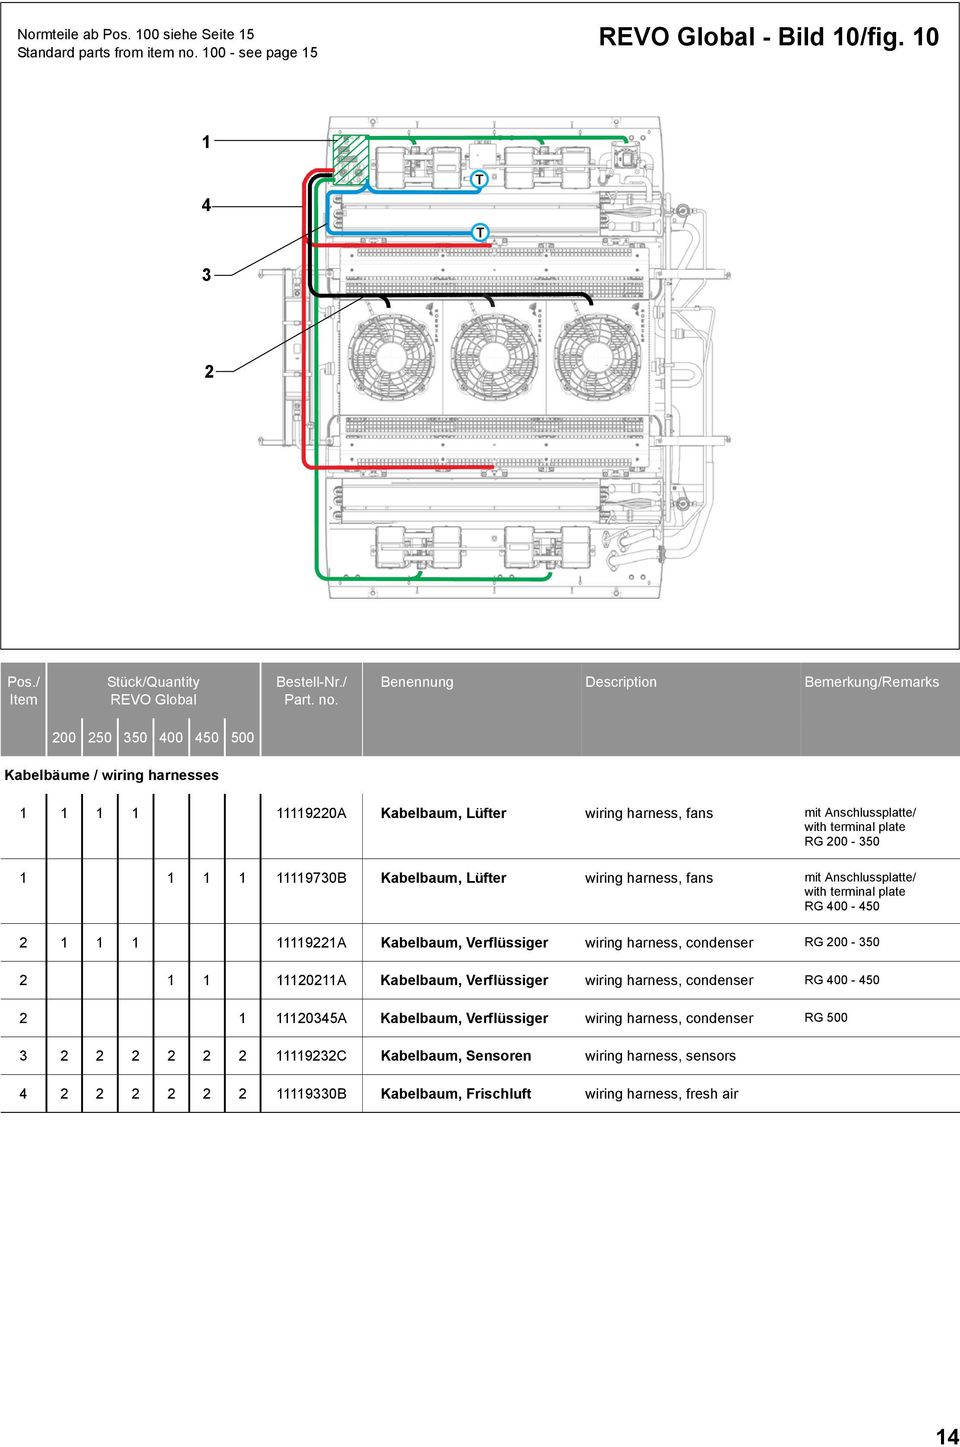 plate RG 00-50 1 1 1 1 1111970B Kabelbaum, Lüfter wiring harness, fans mit Anschlussplatte/ with terminal plate RG 00-50 1 1 1 111191A Kabelbaum,